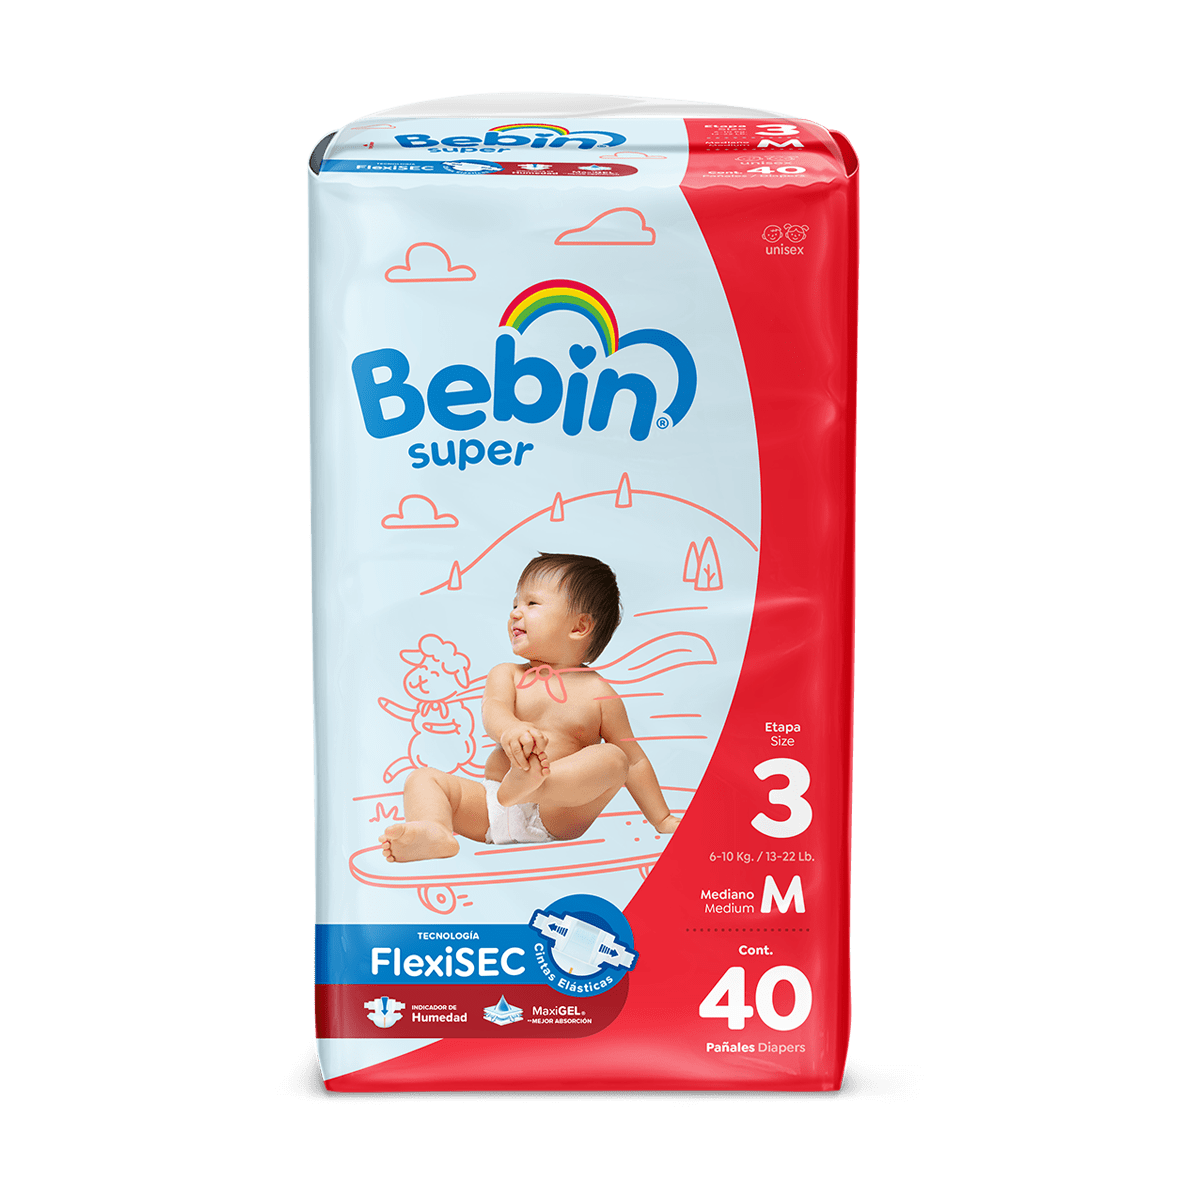 Bebin Super Diaper <br>Medium (13 24 Lbs)